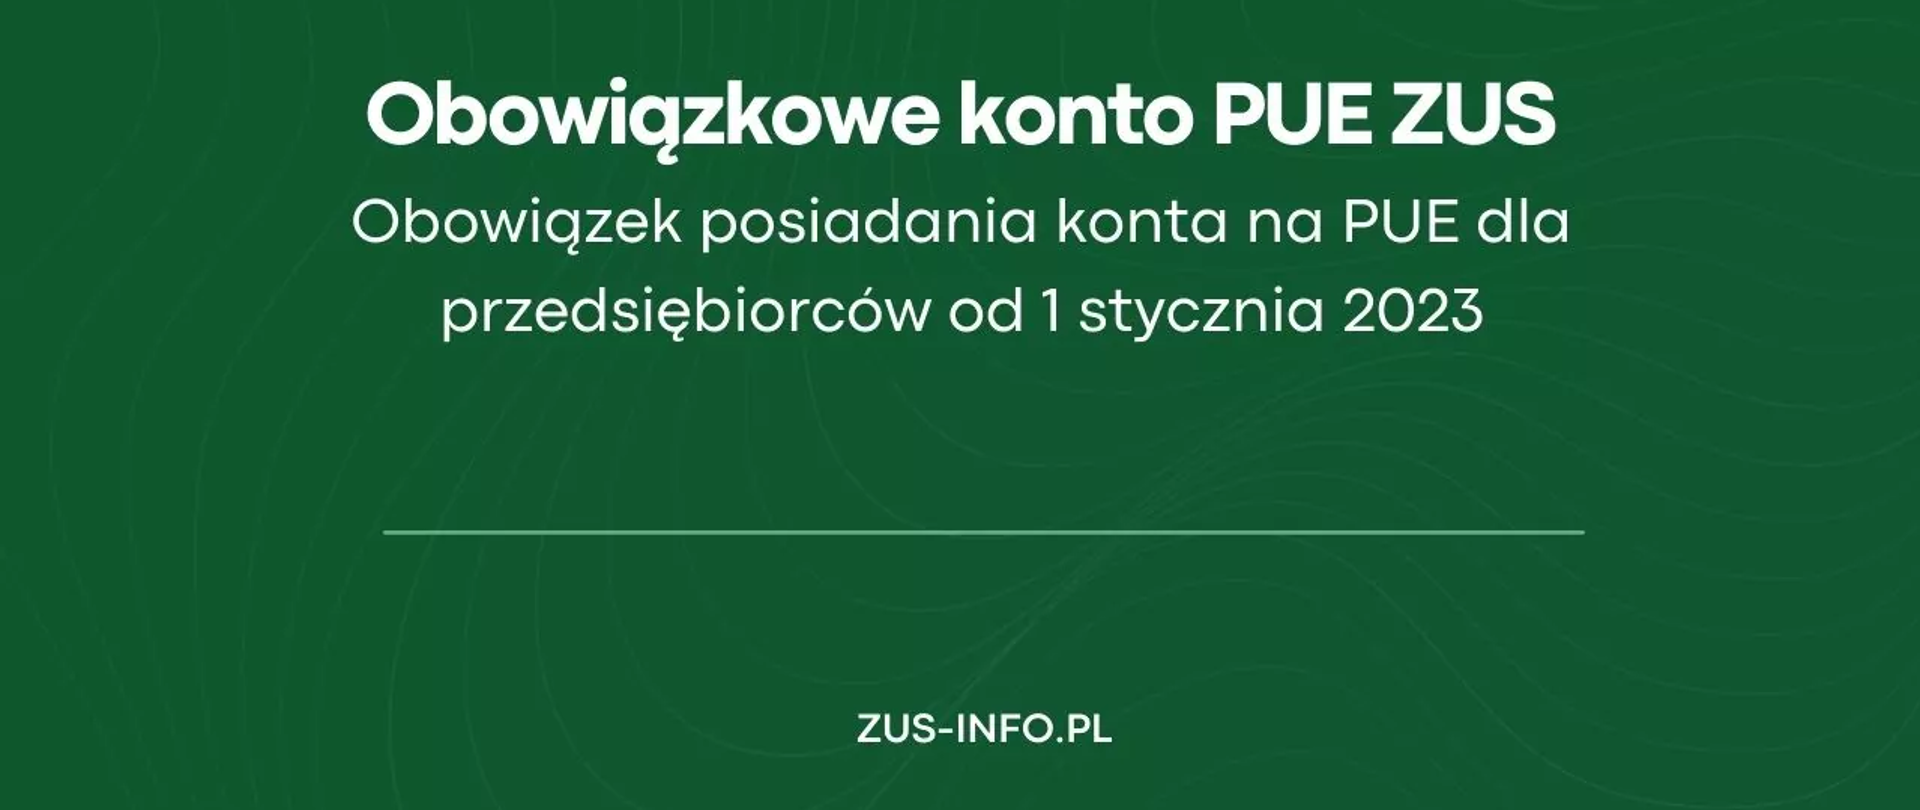 Treść: "Obowiązkowe konto PUE ZUS Obowiązek posiadania konta na PUE dla przedsiębiorców od 1 stycznia 2023 ZUS-INFO.PL"